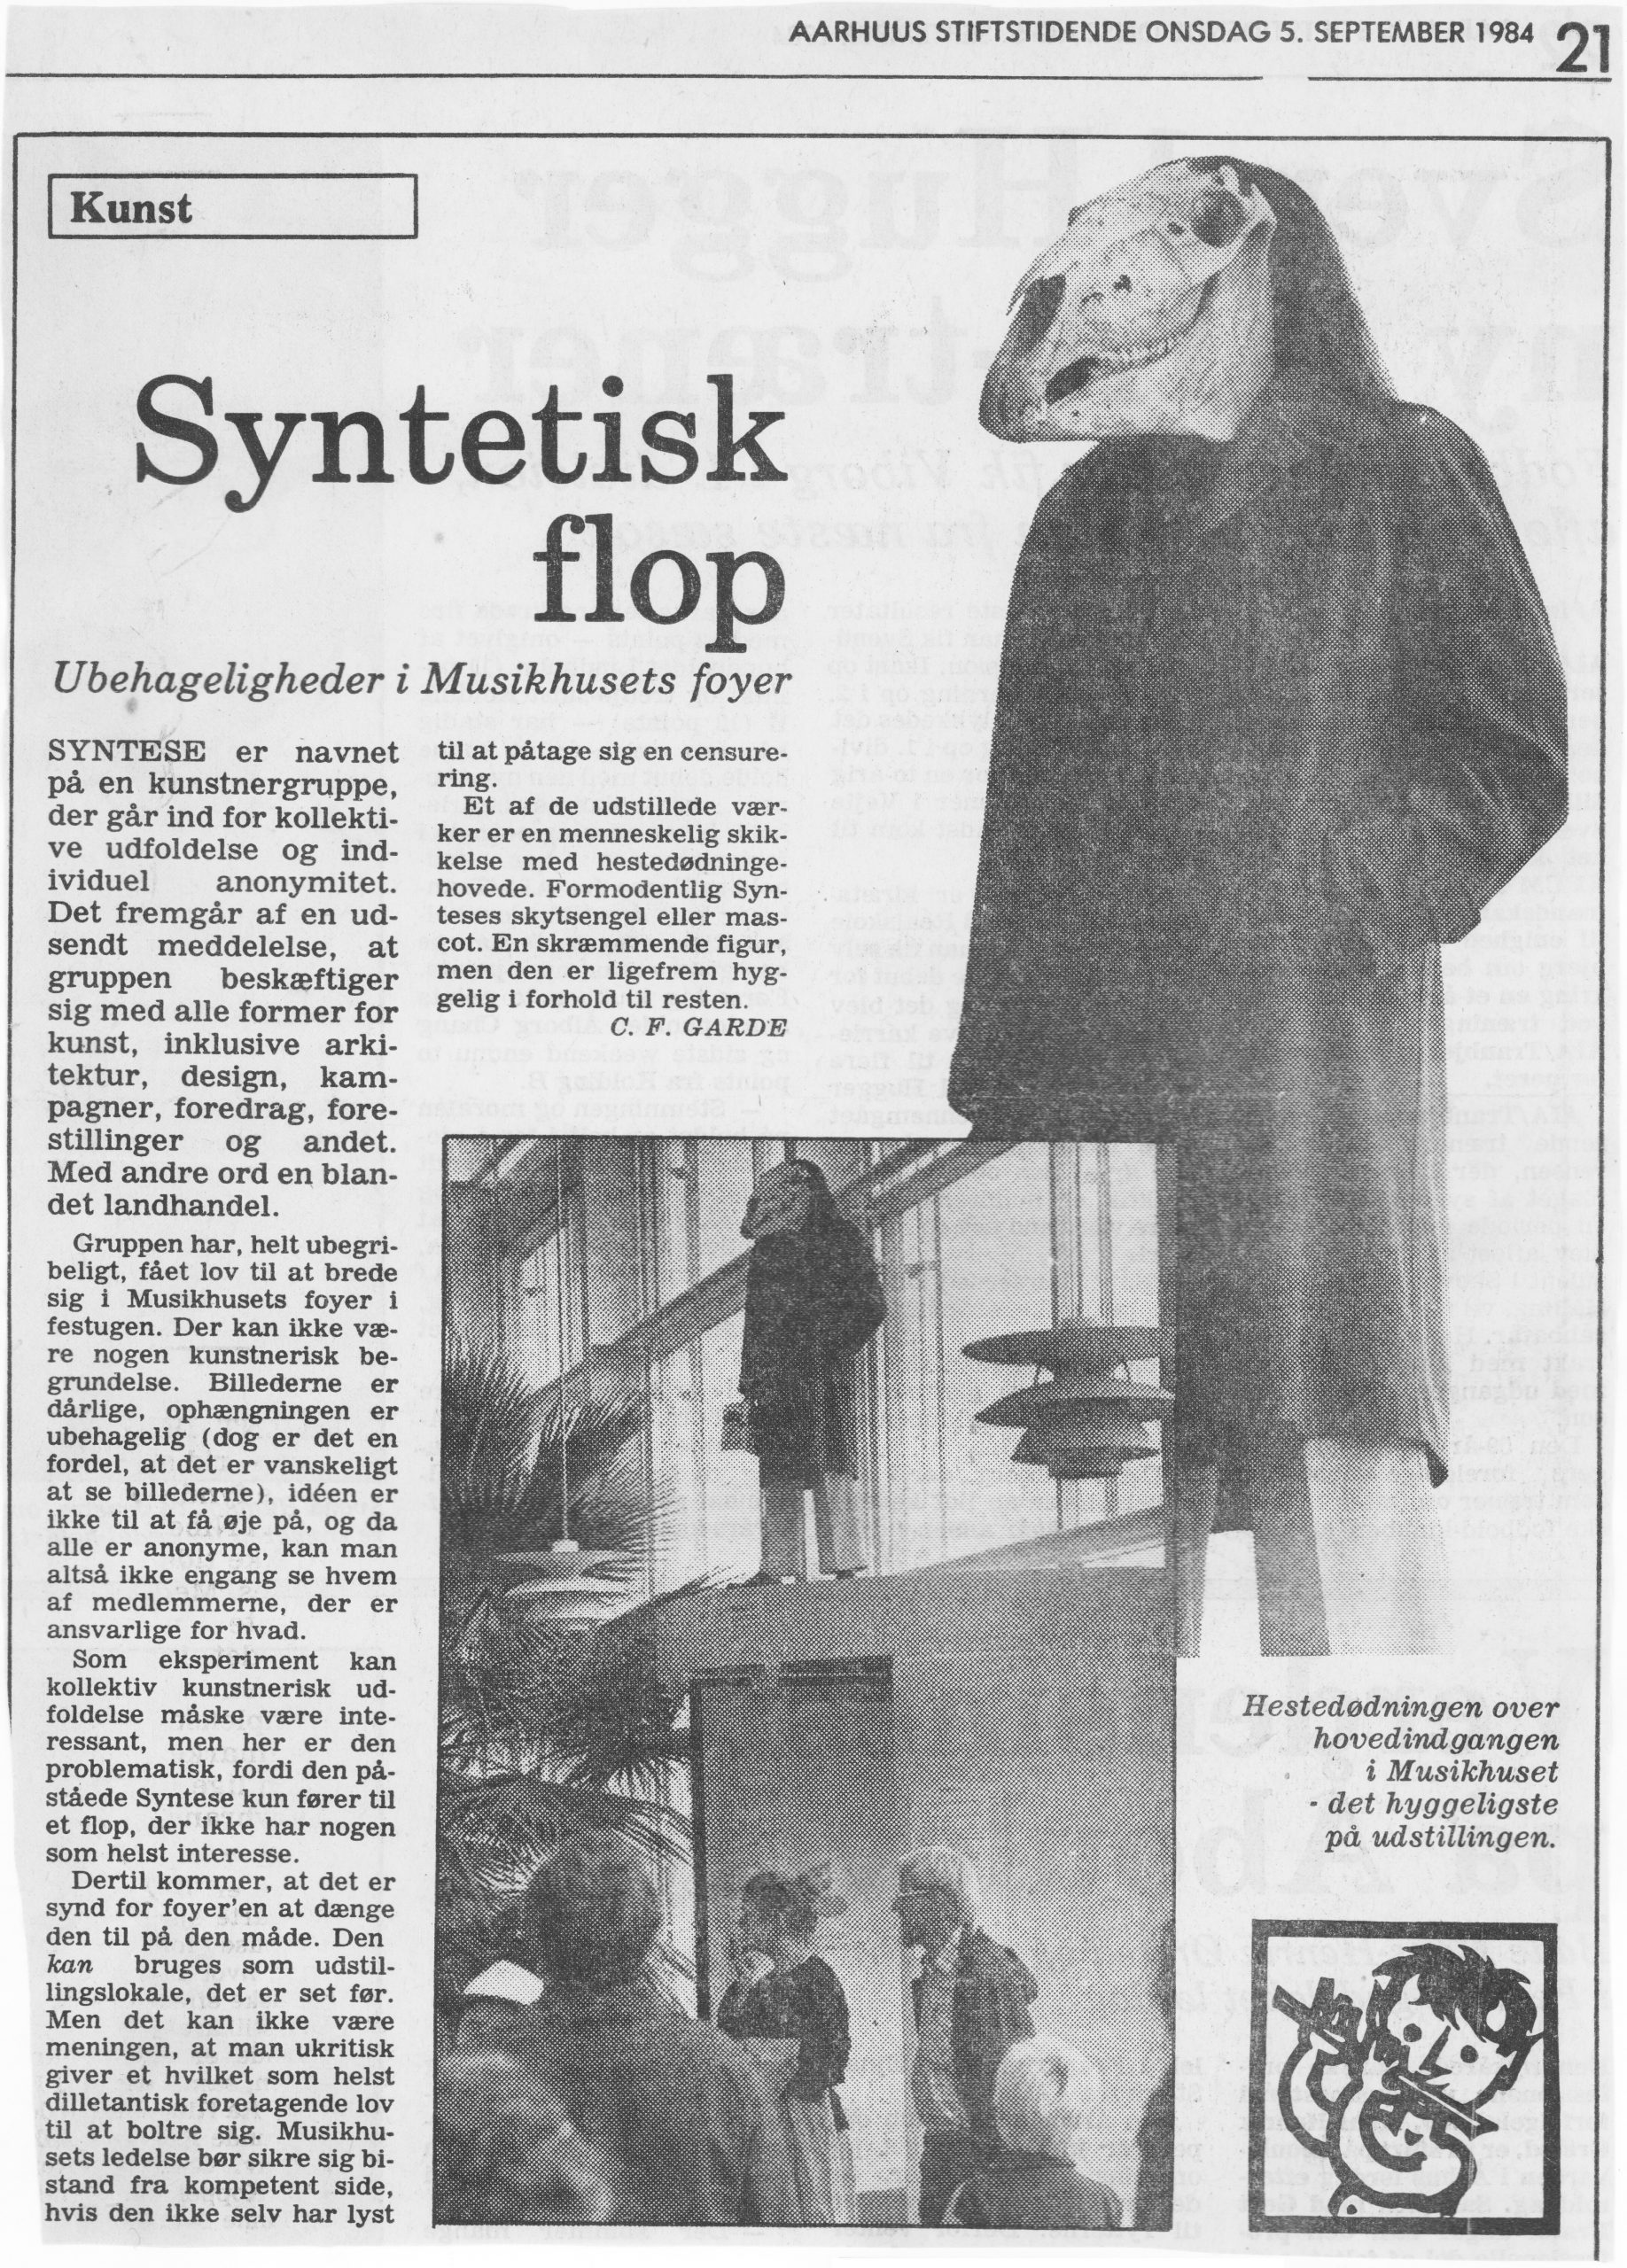 Syntetisk flop. Anmeldelse (Der festes omkring Daisys kolonihavehus. Musikhuset, Aarhus Festuge, Aarhus). C. F Garde. Aarhus Stftstidende.